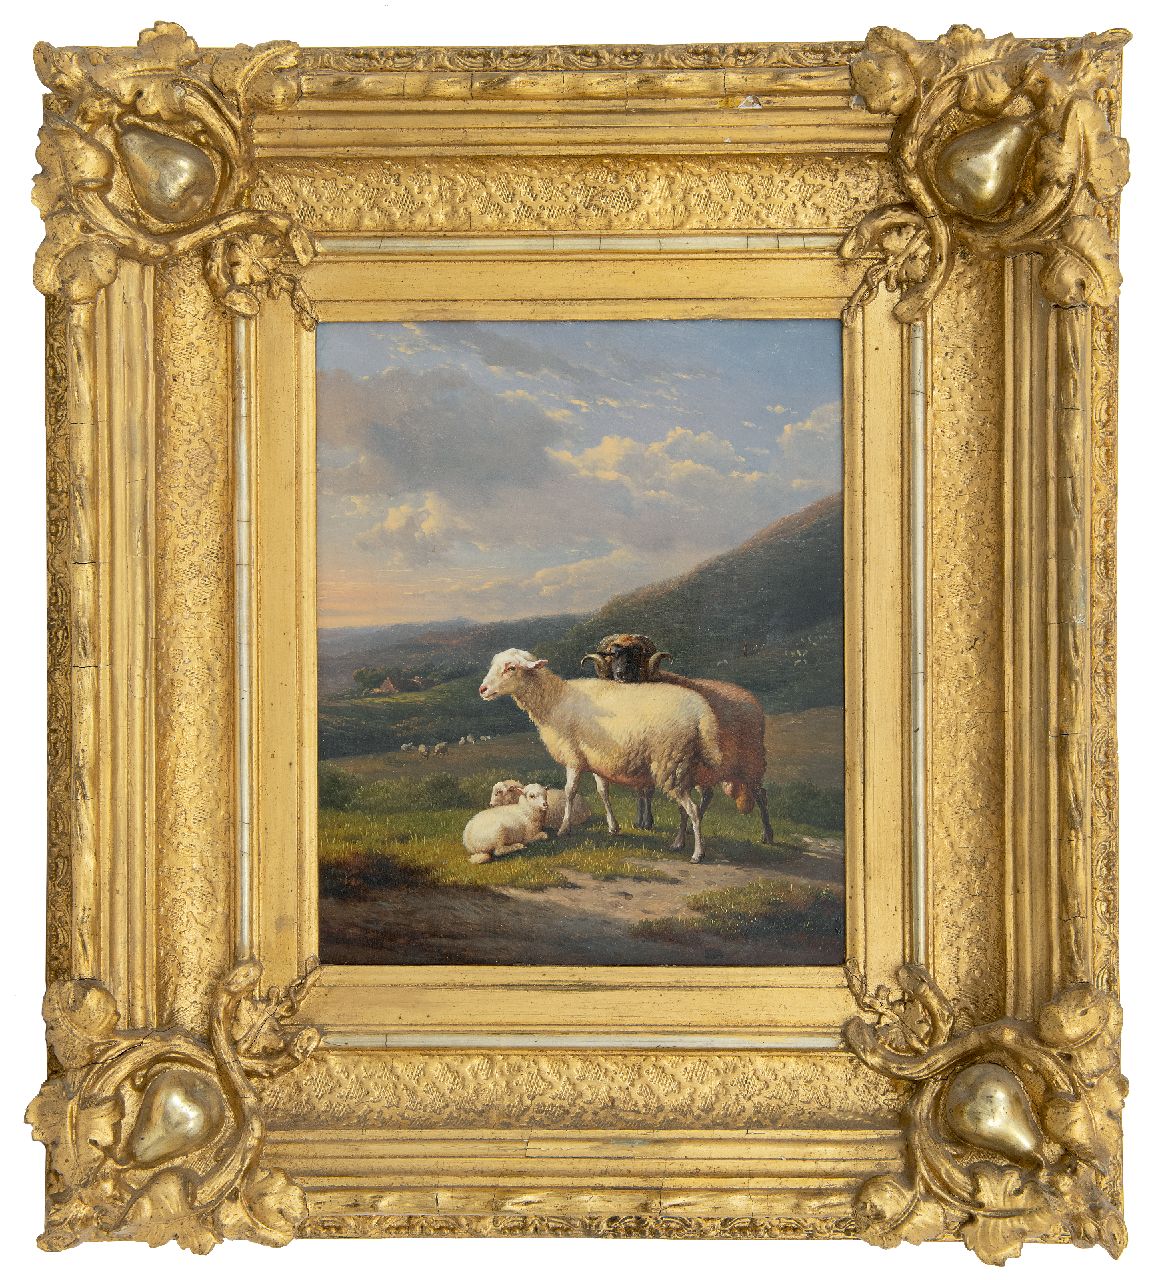 Severdonck F. van | Frans van Severdonck | Schilderijen te koop aangeboden | Ram met schaap en lammeren in heuvellandschap, olieverf op paneel 30,8 x 25,8 cm